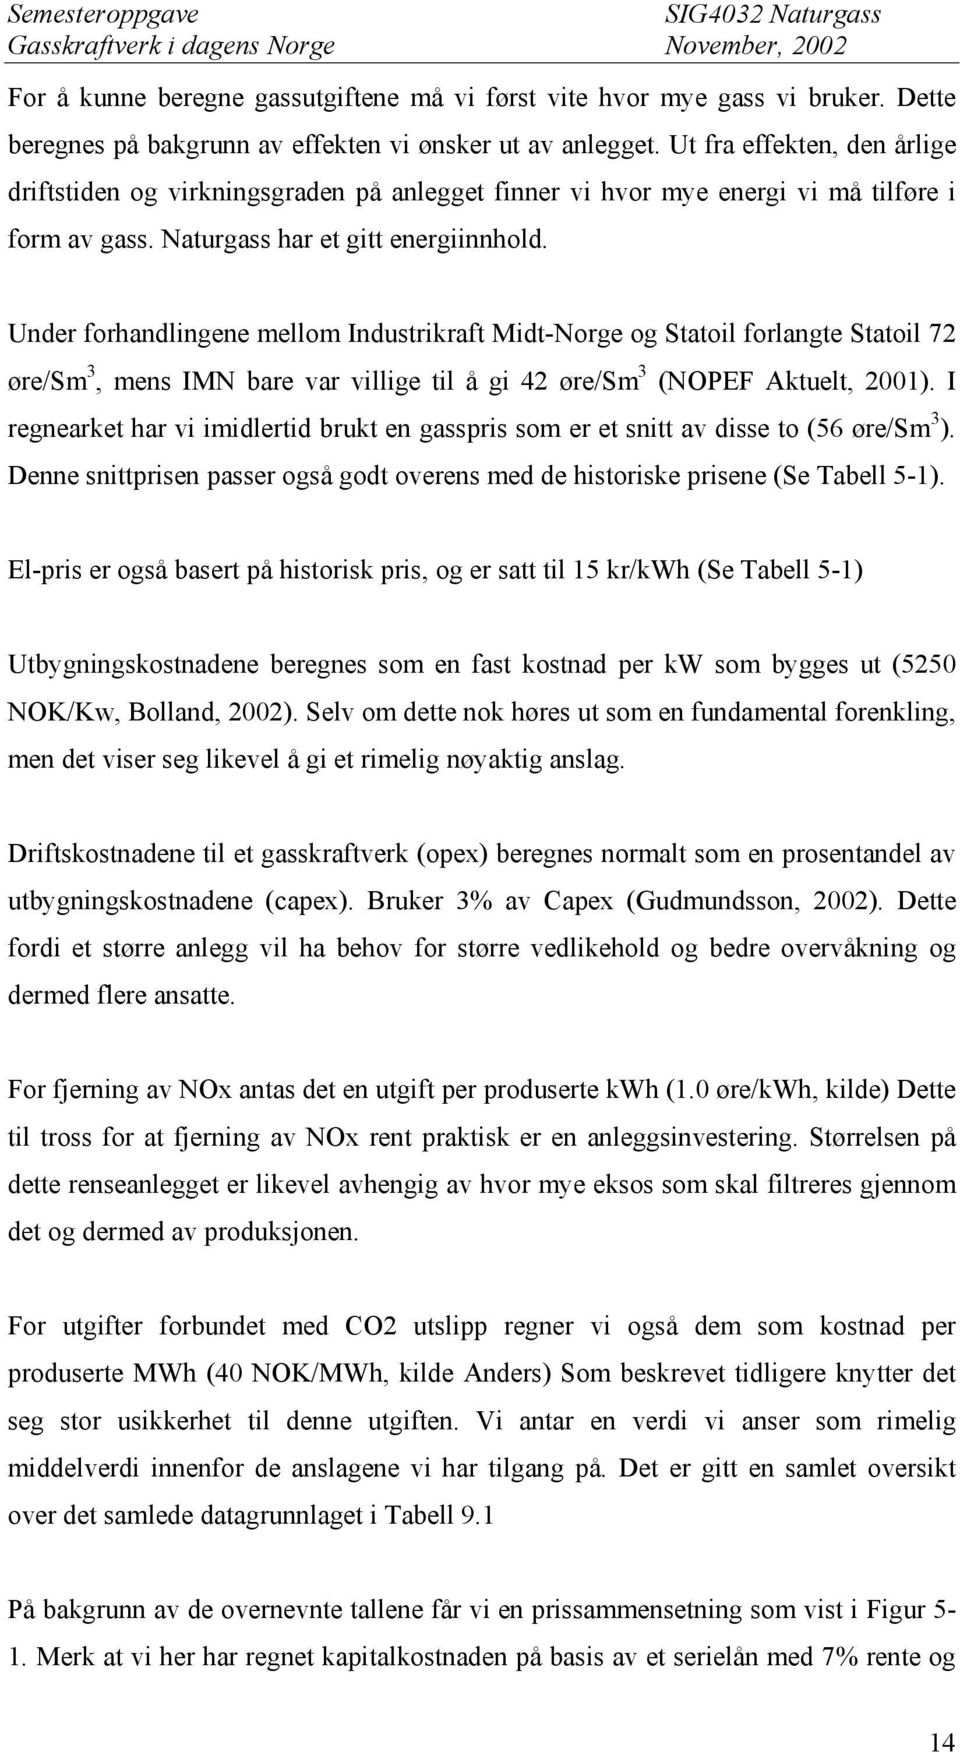 Under forhandlingene mellom Industrikraft Midt-Norge og Statoil forlangte Statoil 72 øre/sm 3, mens IMN bare var villige til å gi 42 øre/sm 3 (NOPEF Aktuelt, 2001).